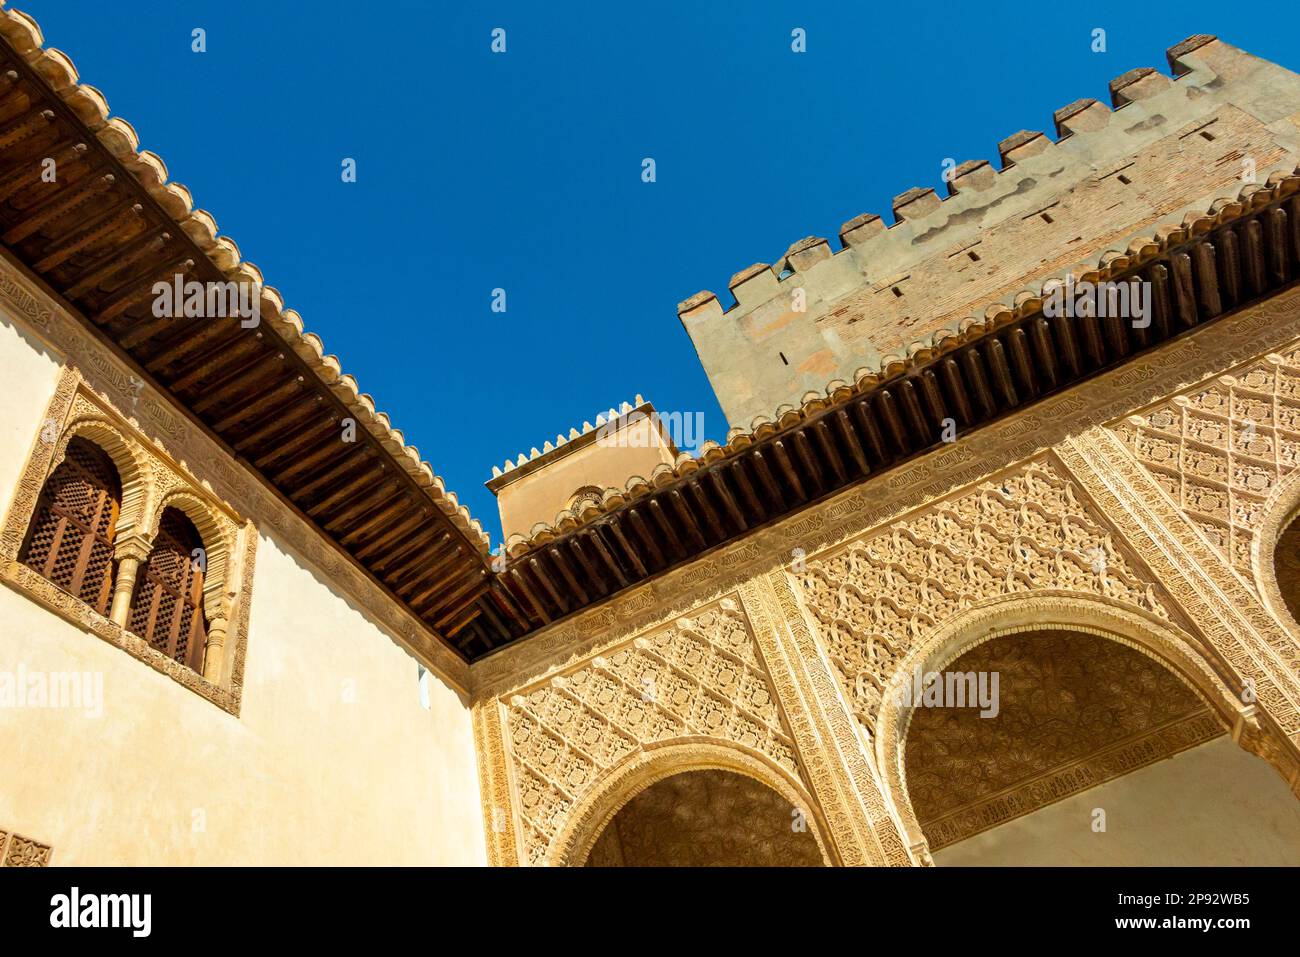 Decorazioni islamiche nel Palazzo dell'Alhambra a Granada Andalucia Spagna Sito Patrimonio dell'Umanità dell'UNESCO e principale attrazione turistica. Foto Stock